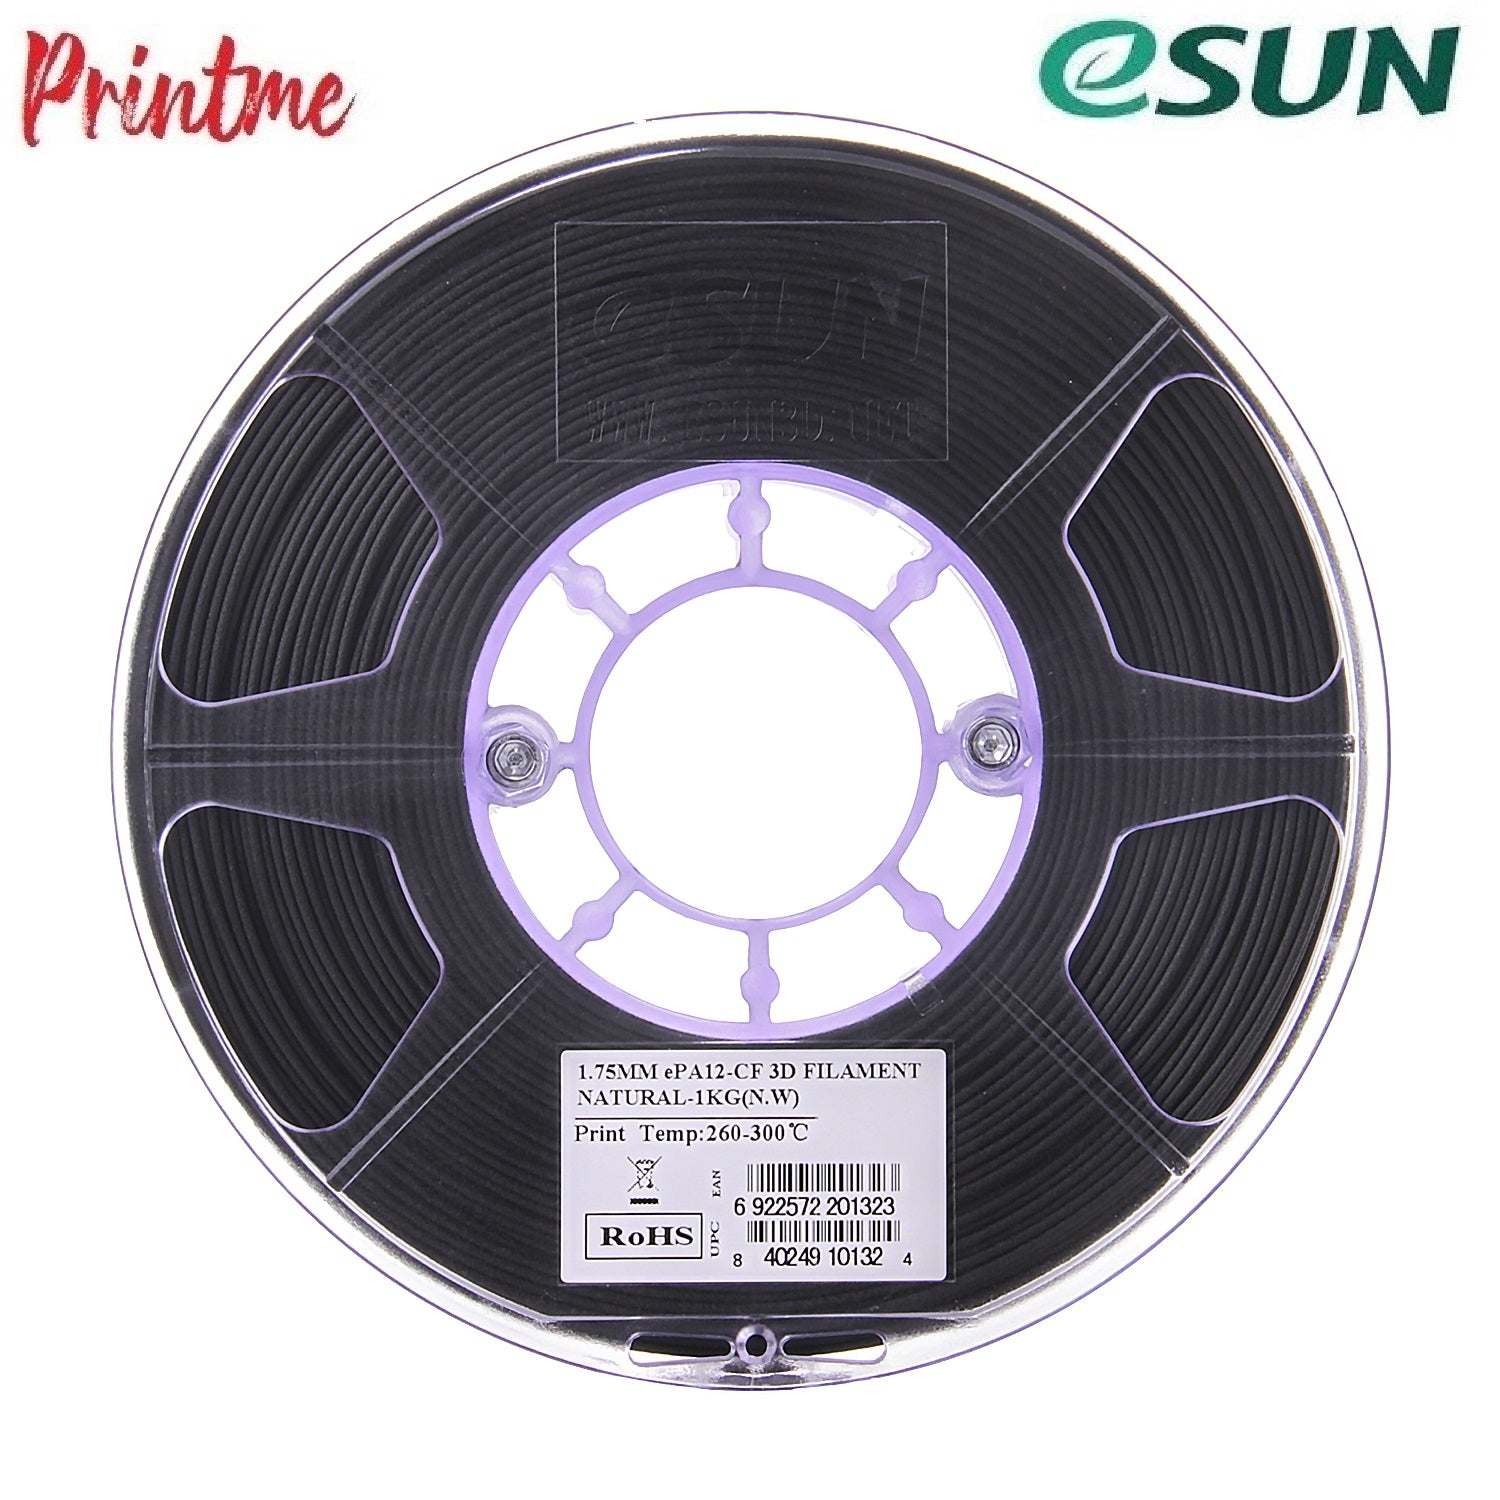 eSUN ePA-CF (20% Carbon Fibre) 1.75mm 3D PRINTER FILAMENT 1kg/2.2lbs